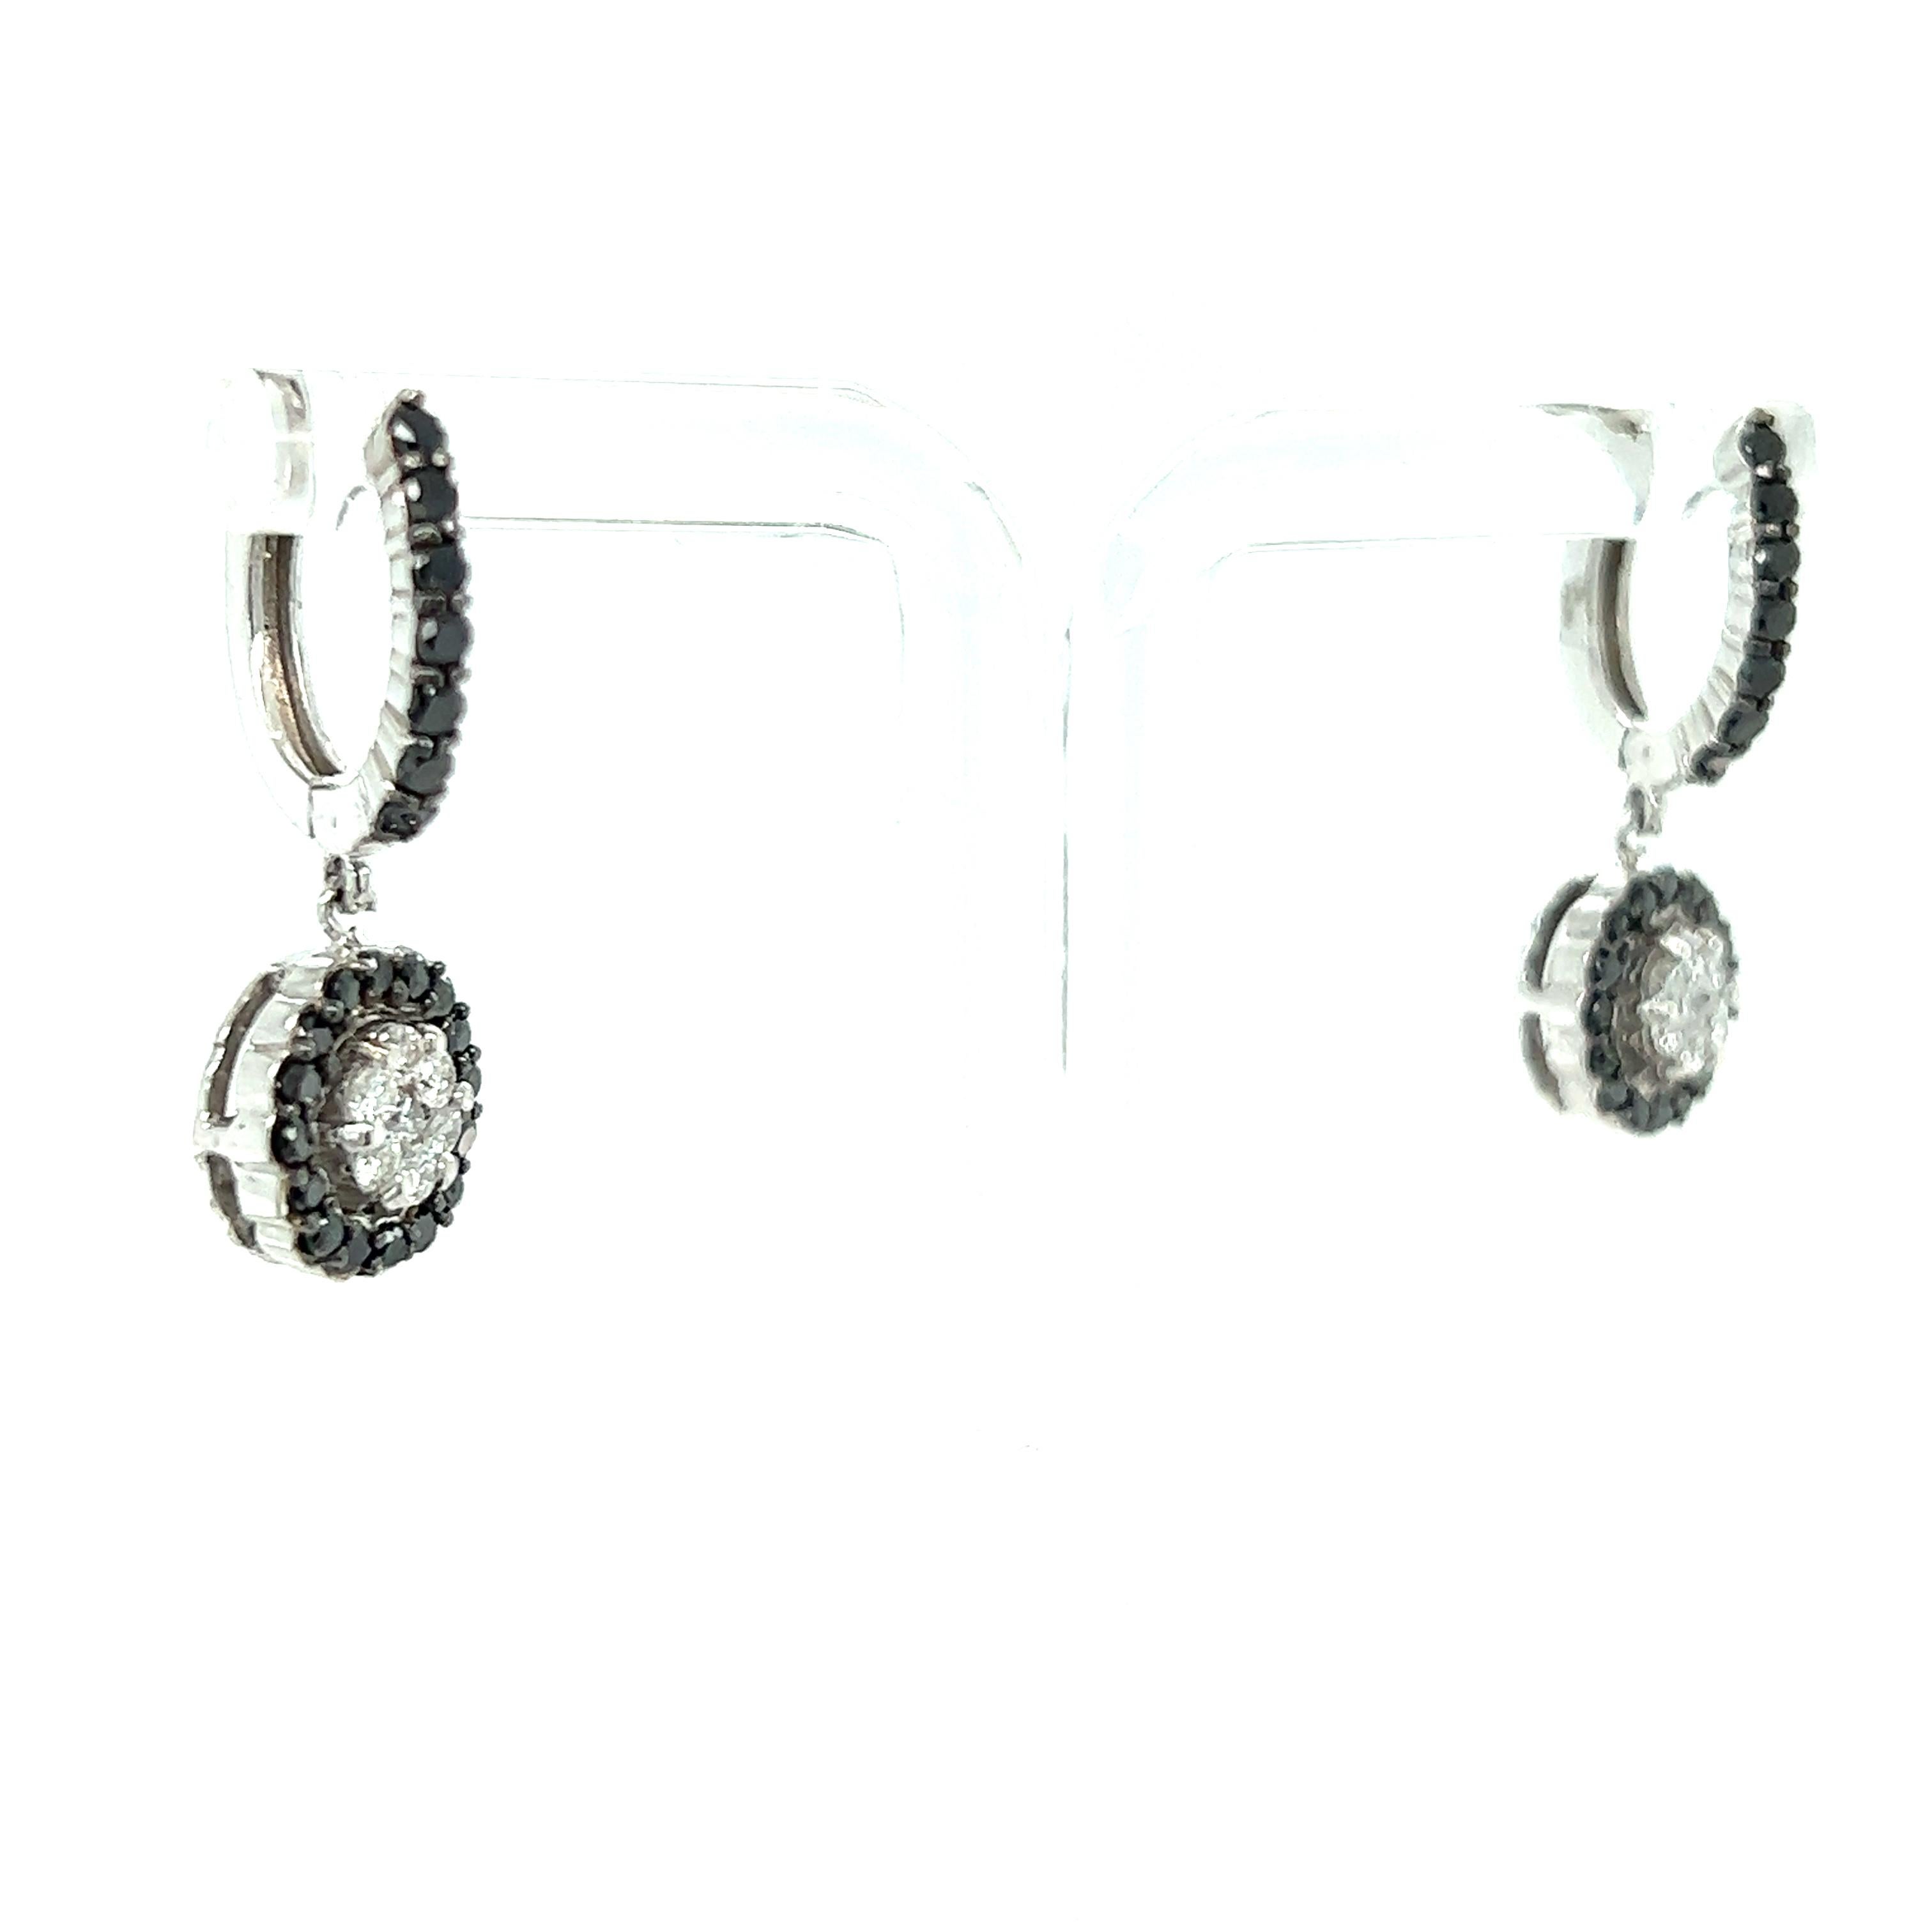 Diese Ohrringe haben natürliche schwarze Diamanten im Rundschliff mit einem Gewicht von 0,85 Karat und natürliche weiße Diamanten im Rundschliff mit einem Gewicht von 0,42 Karat. Das Gesamtkaratgewicht der Ohrringe beträgt 1.27 Karat. Die Reinheit